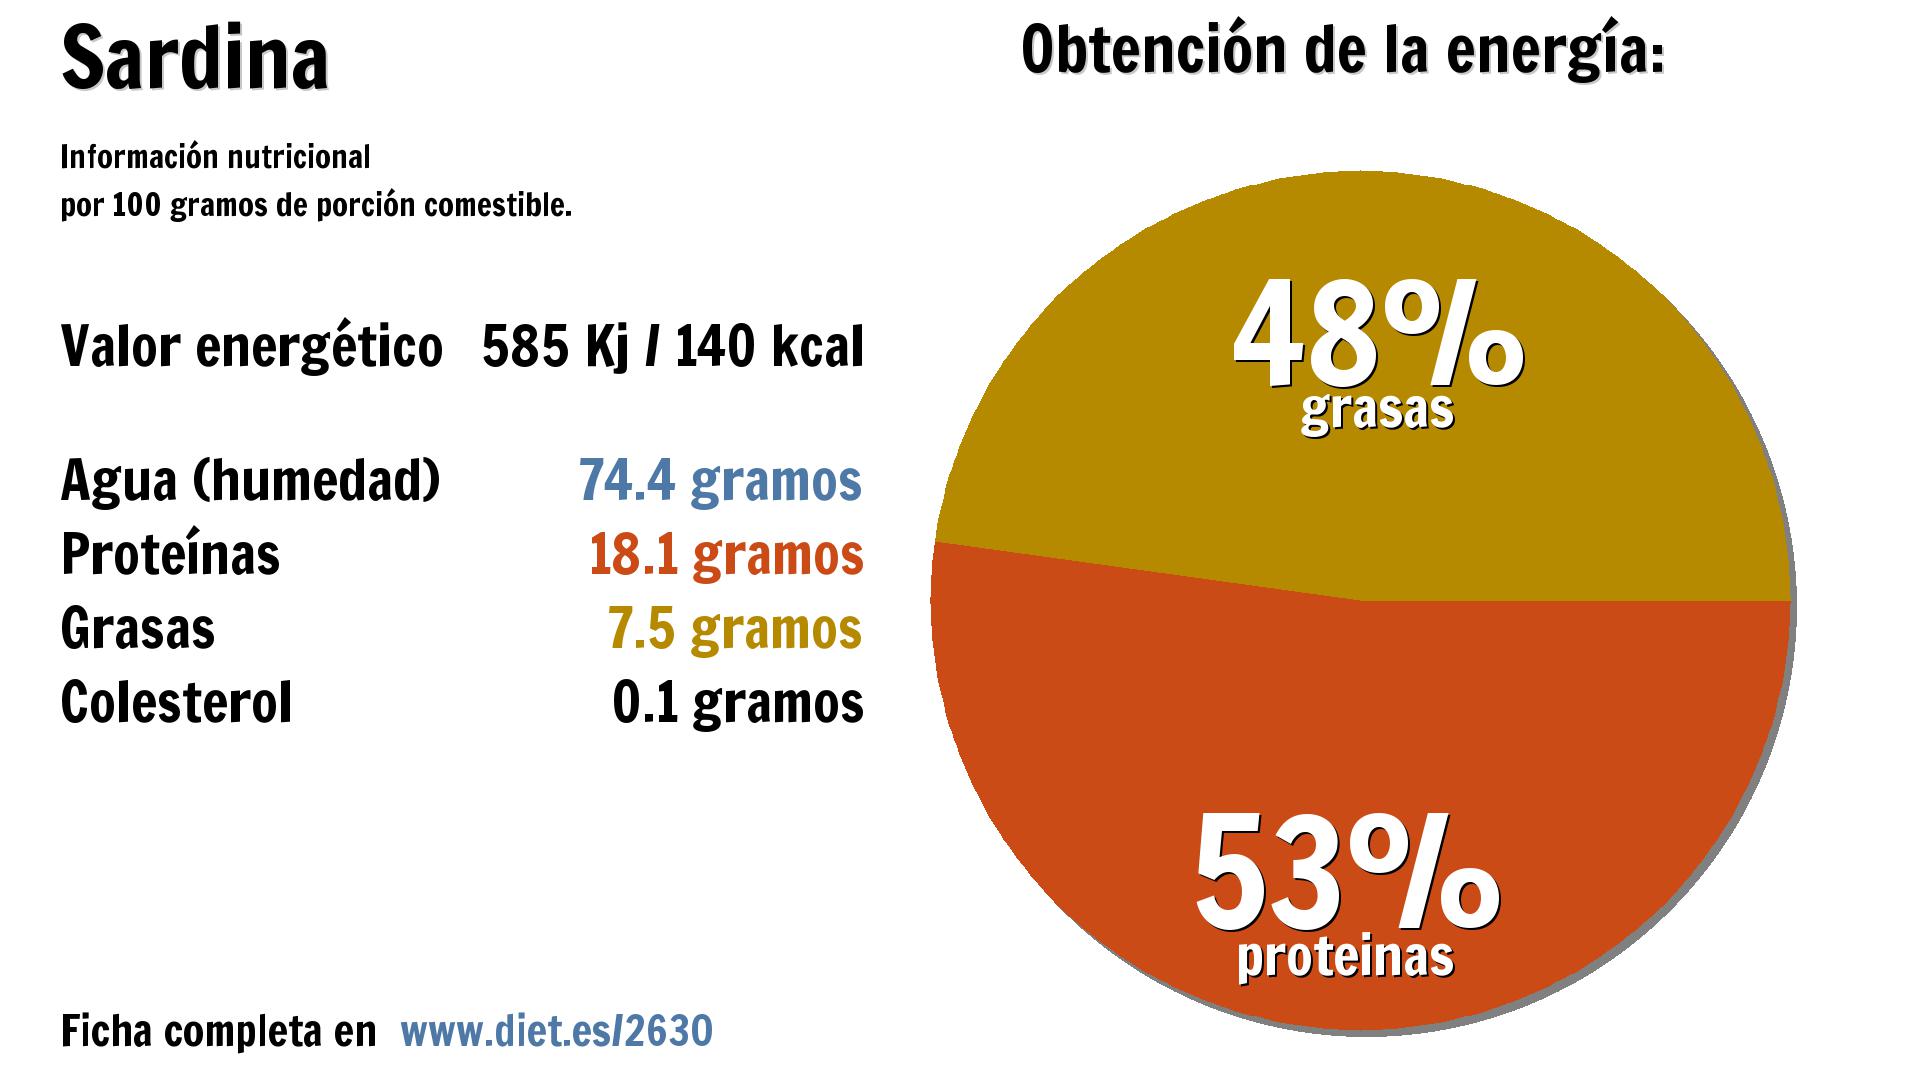 Sardina: energía 585 Kj, agua 74 g., proteínas 18 g. y grasas 8 g.